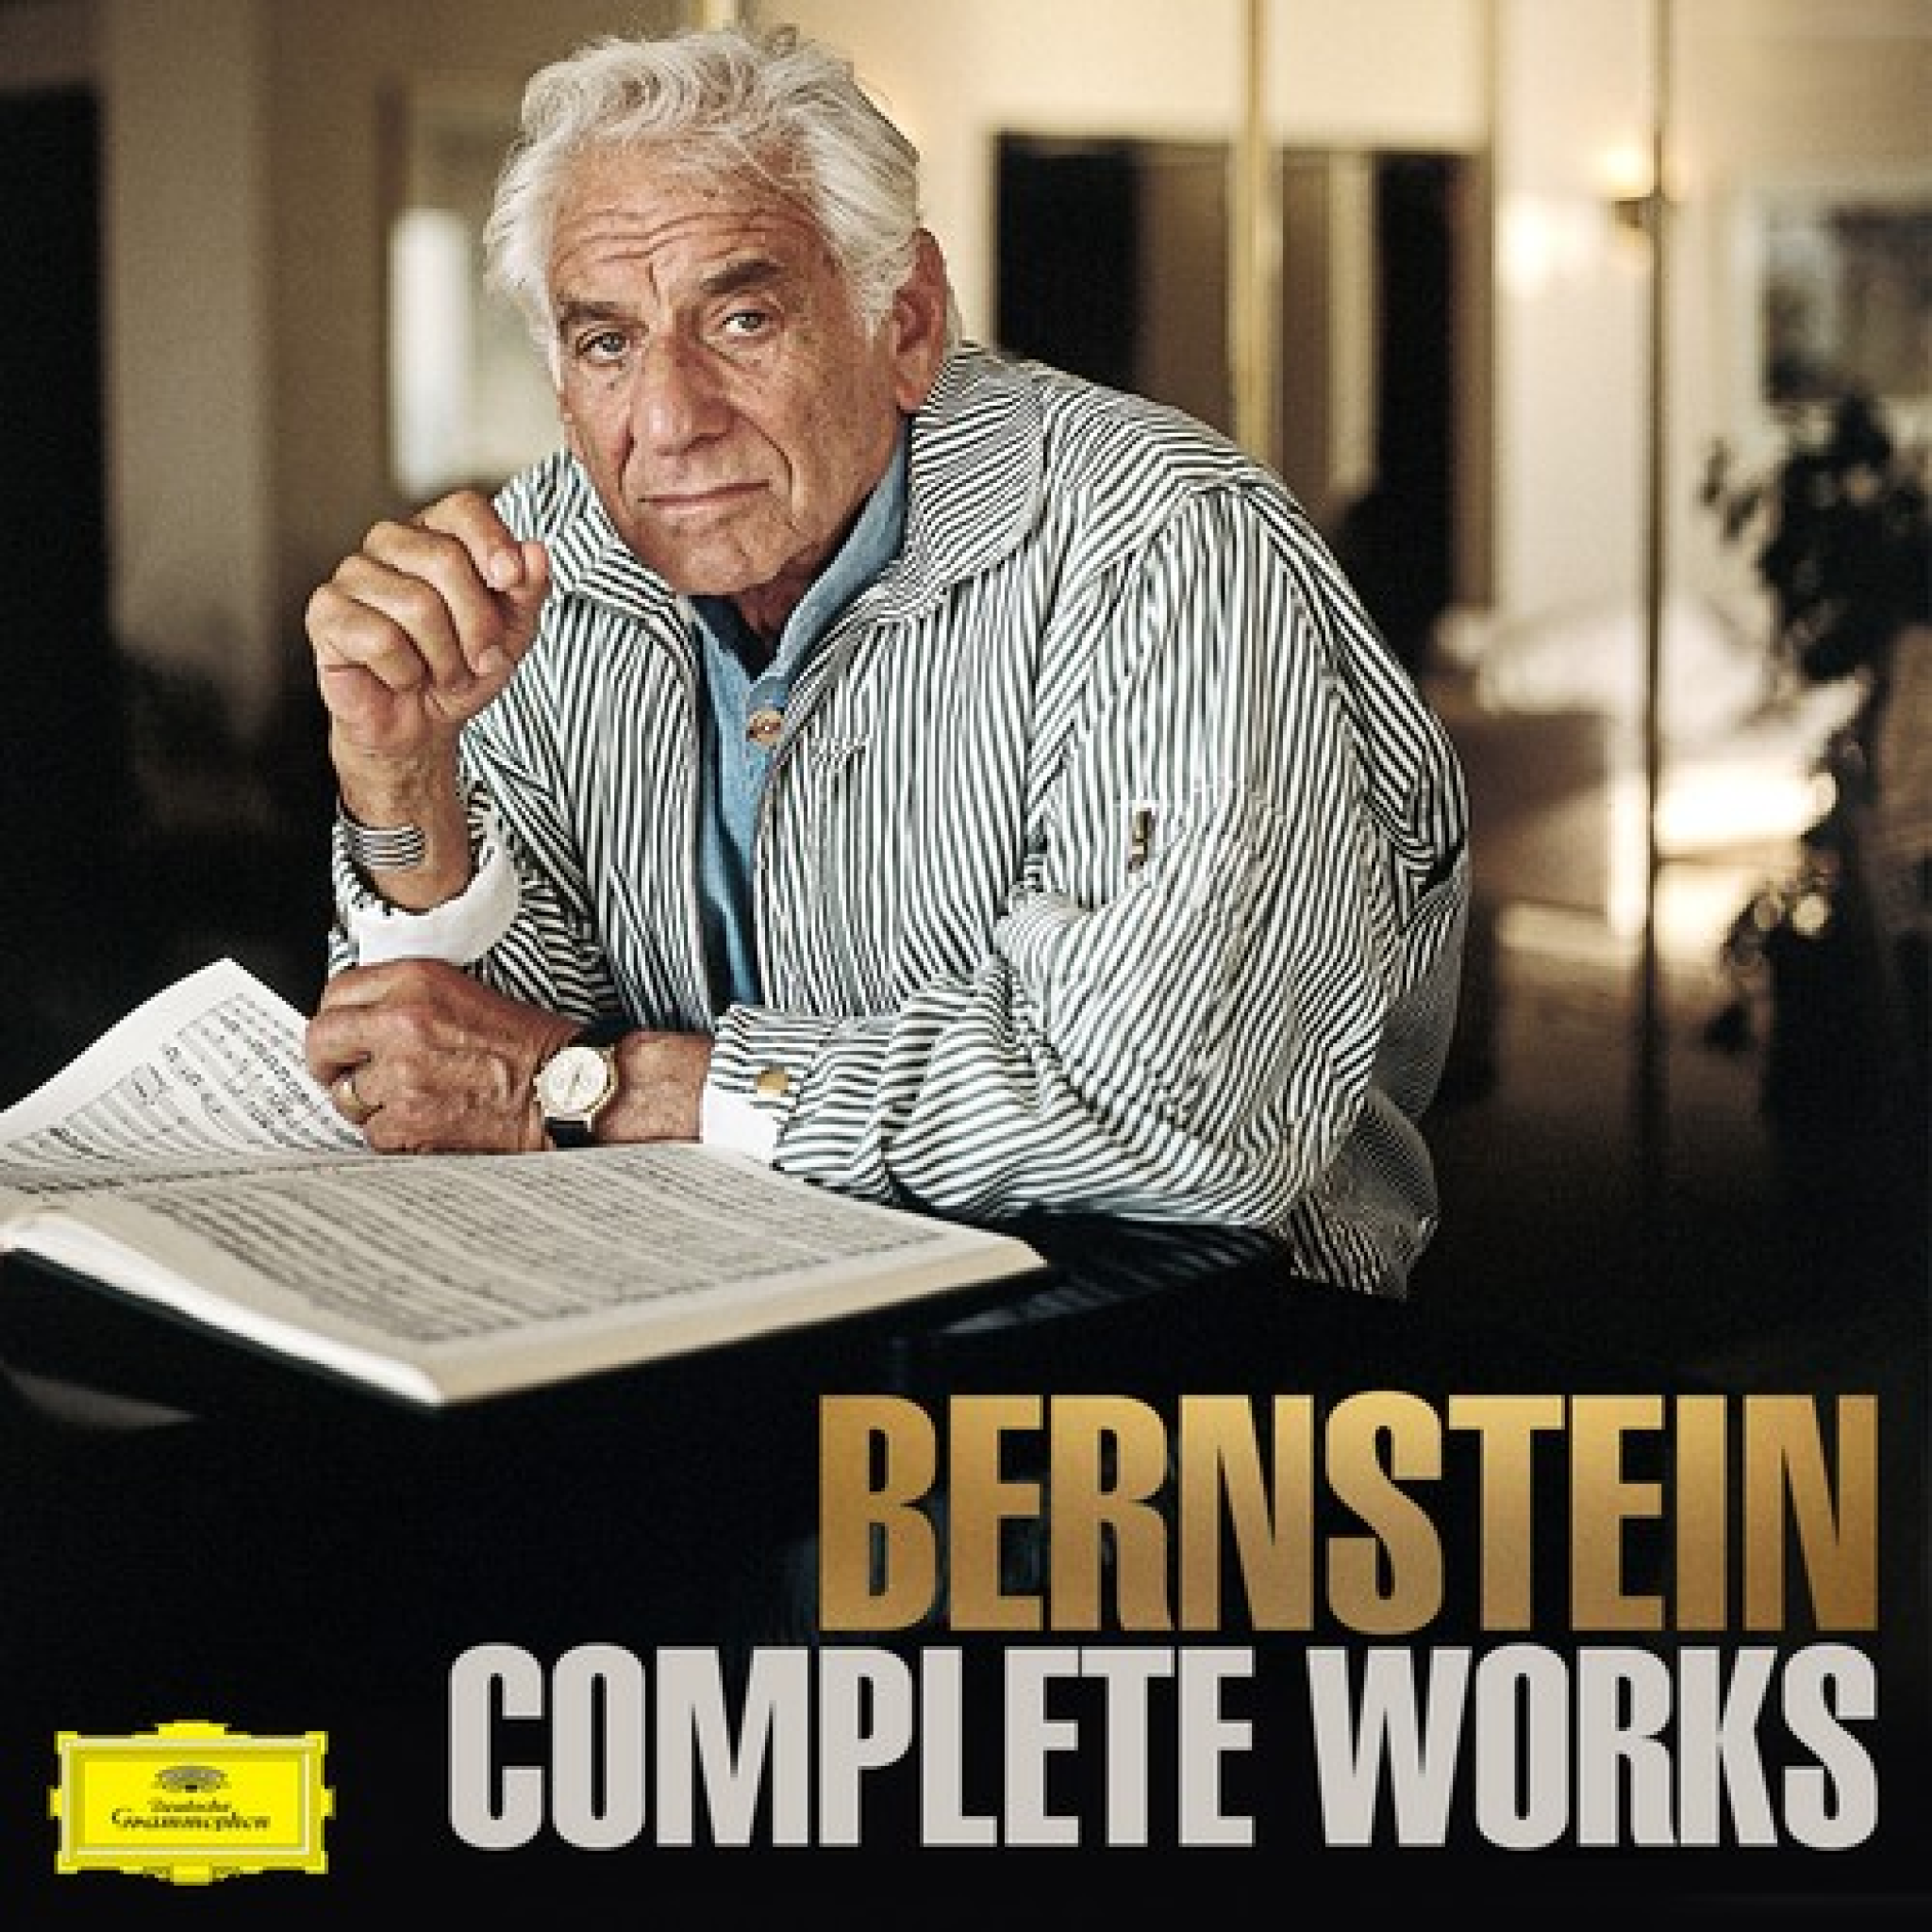 Bernstein Complete Works